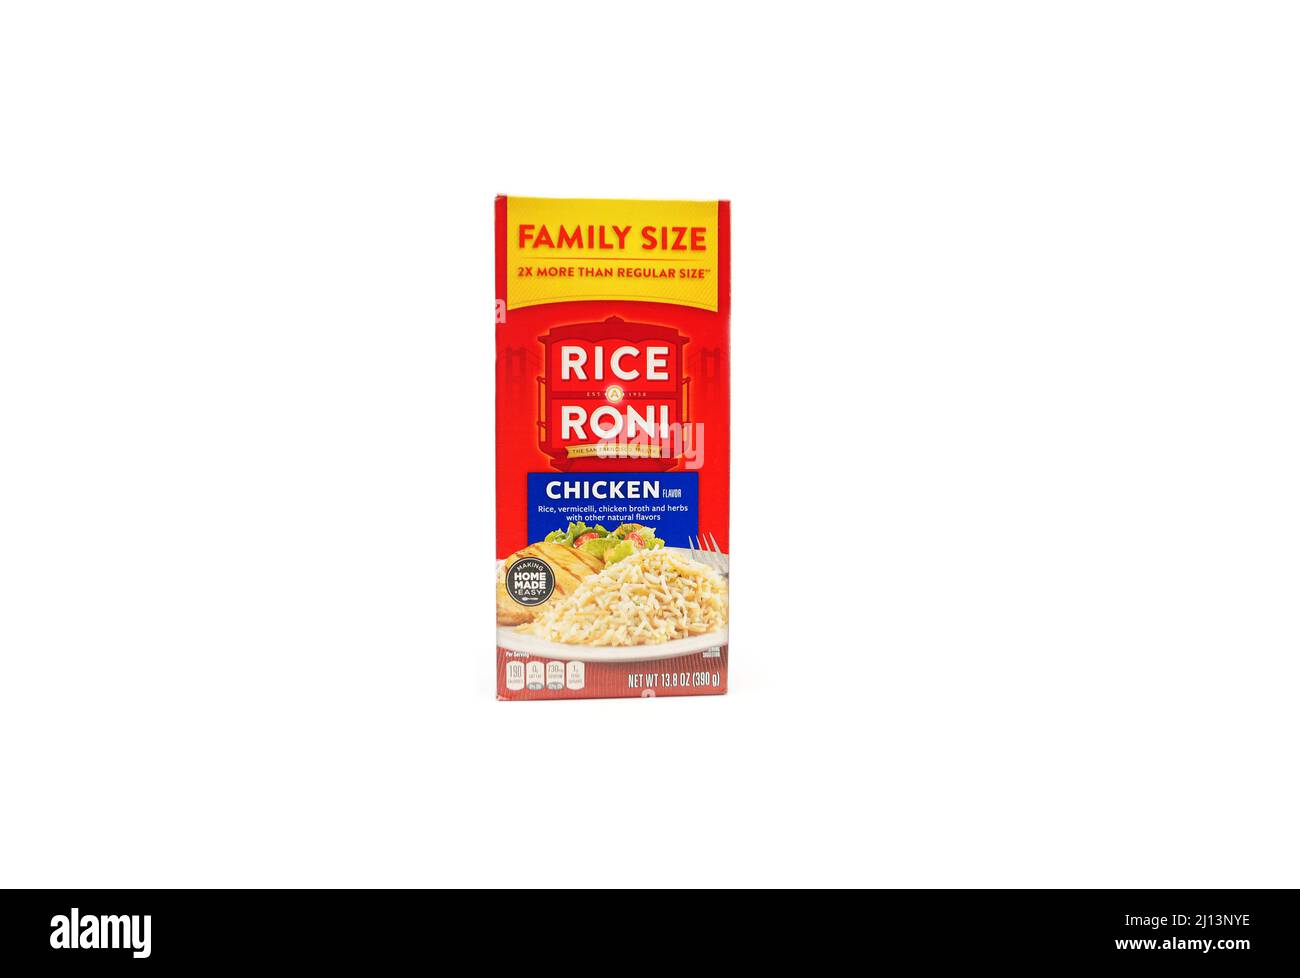 Riz mélange de riz au poulet Roni - taille familiale Banque D'Images